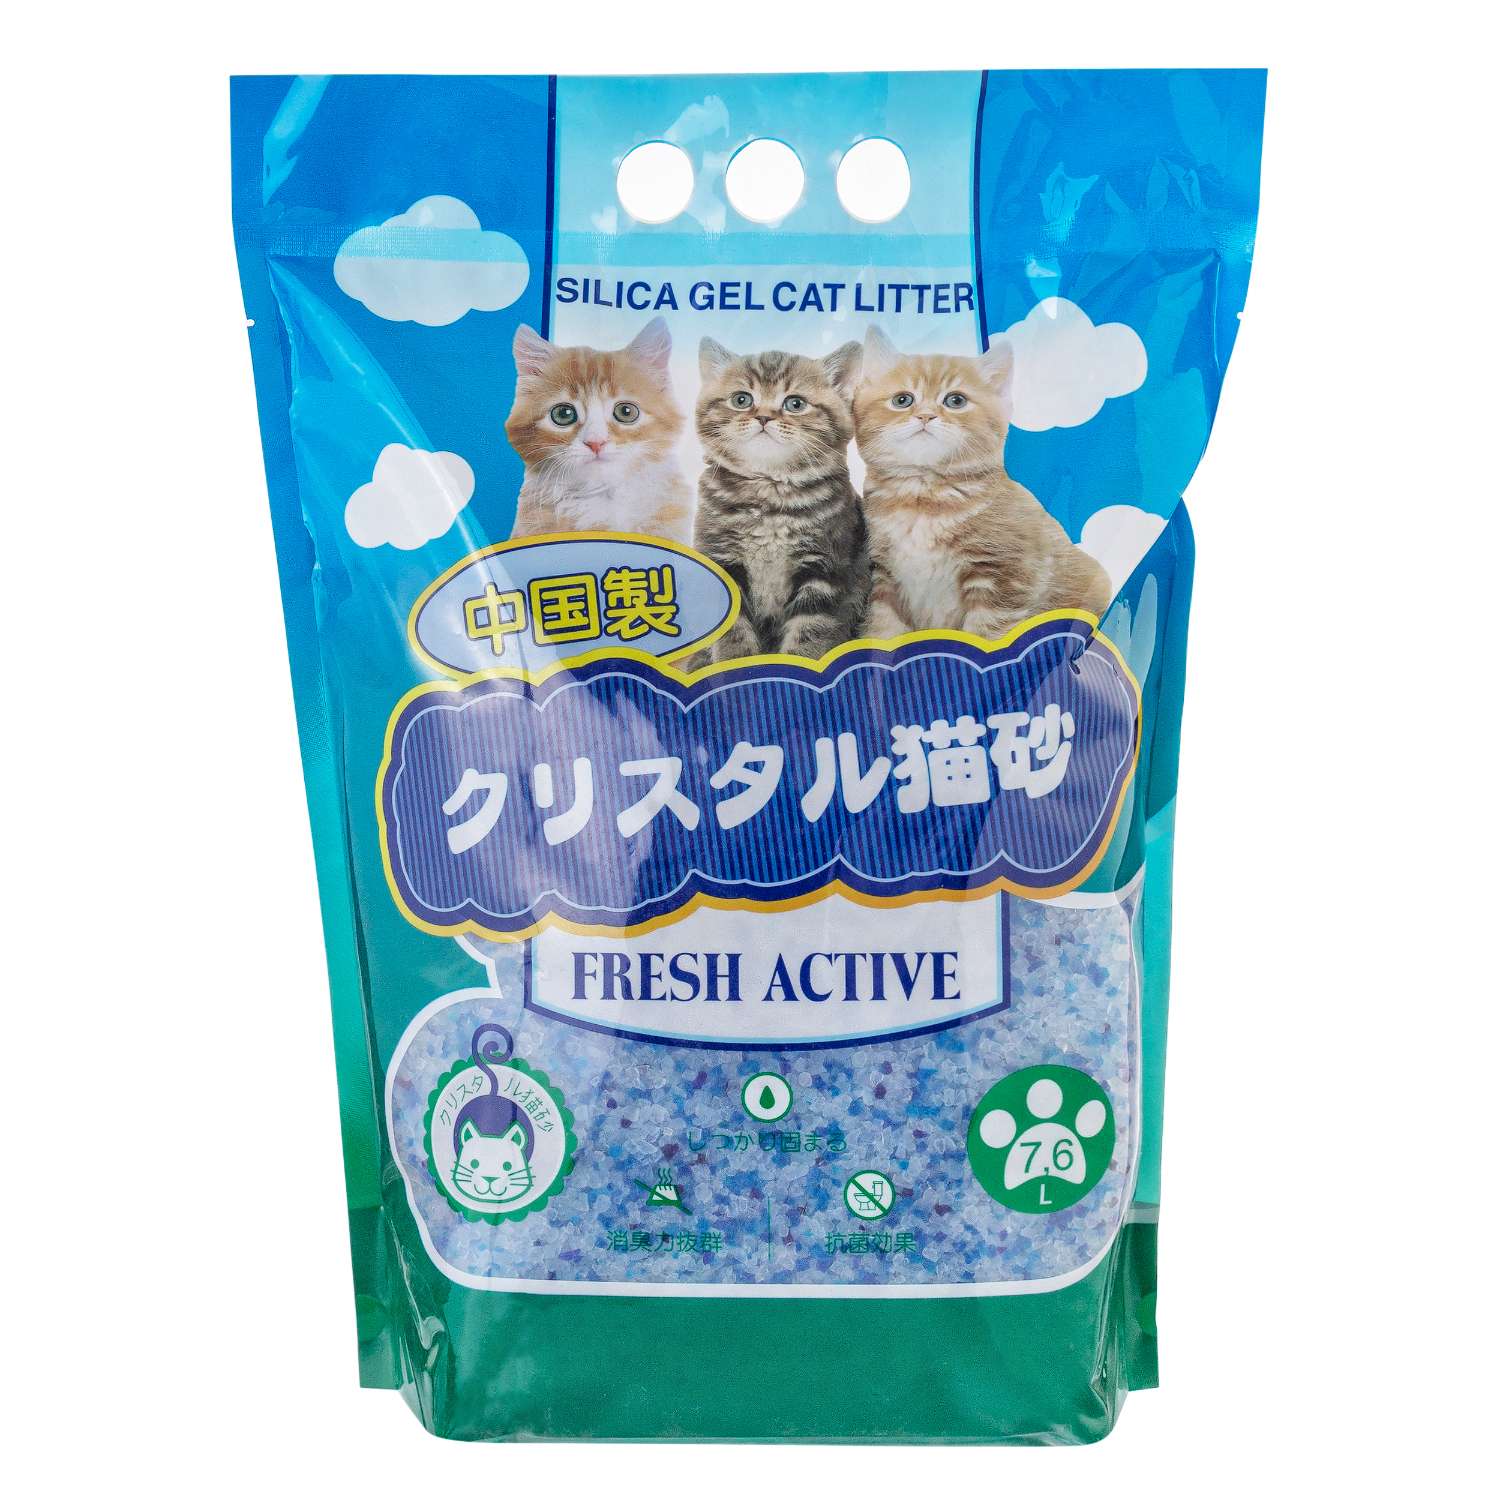 Наполнитель для кошек Hakase Arekkusu Fresh Active силикагелевый впитывающий 7.6л - фото 1